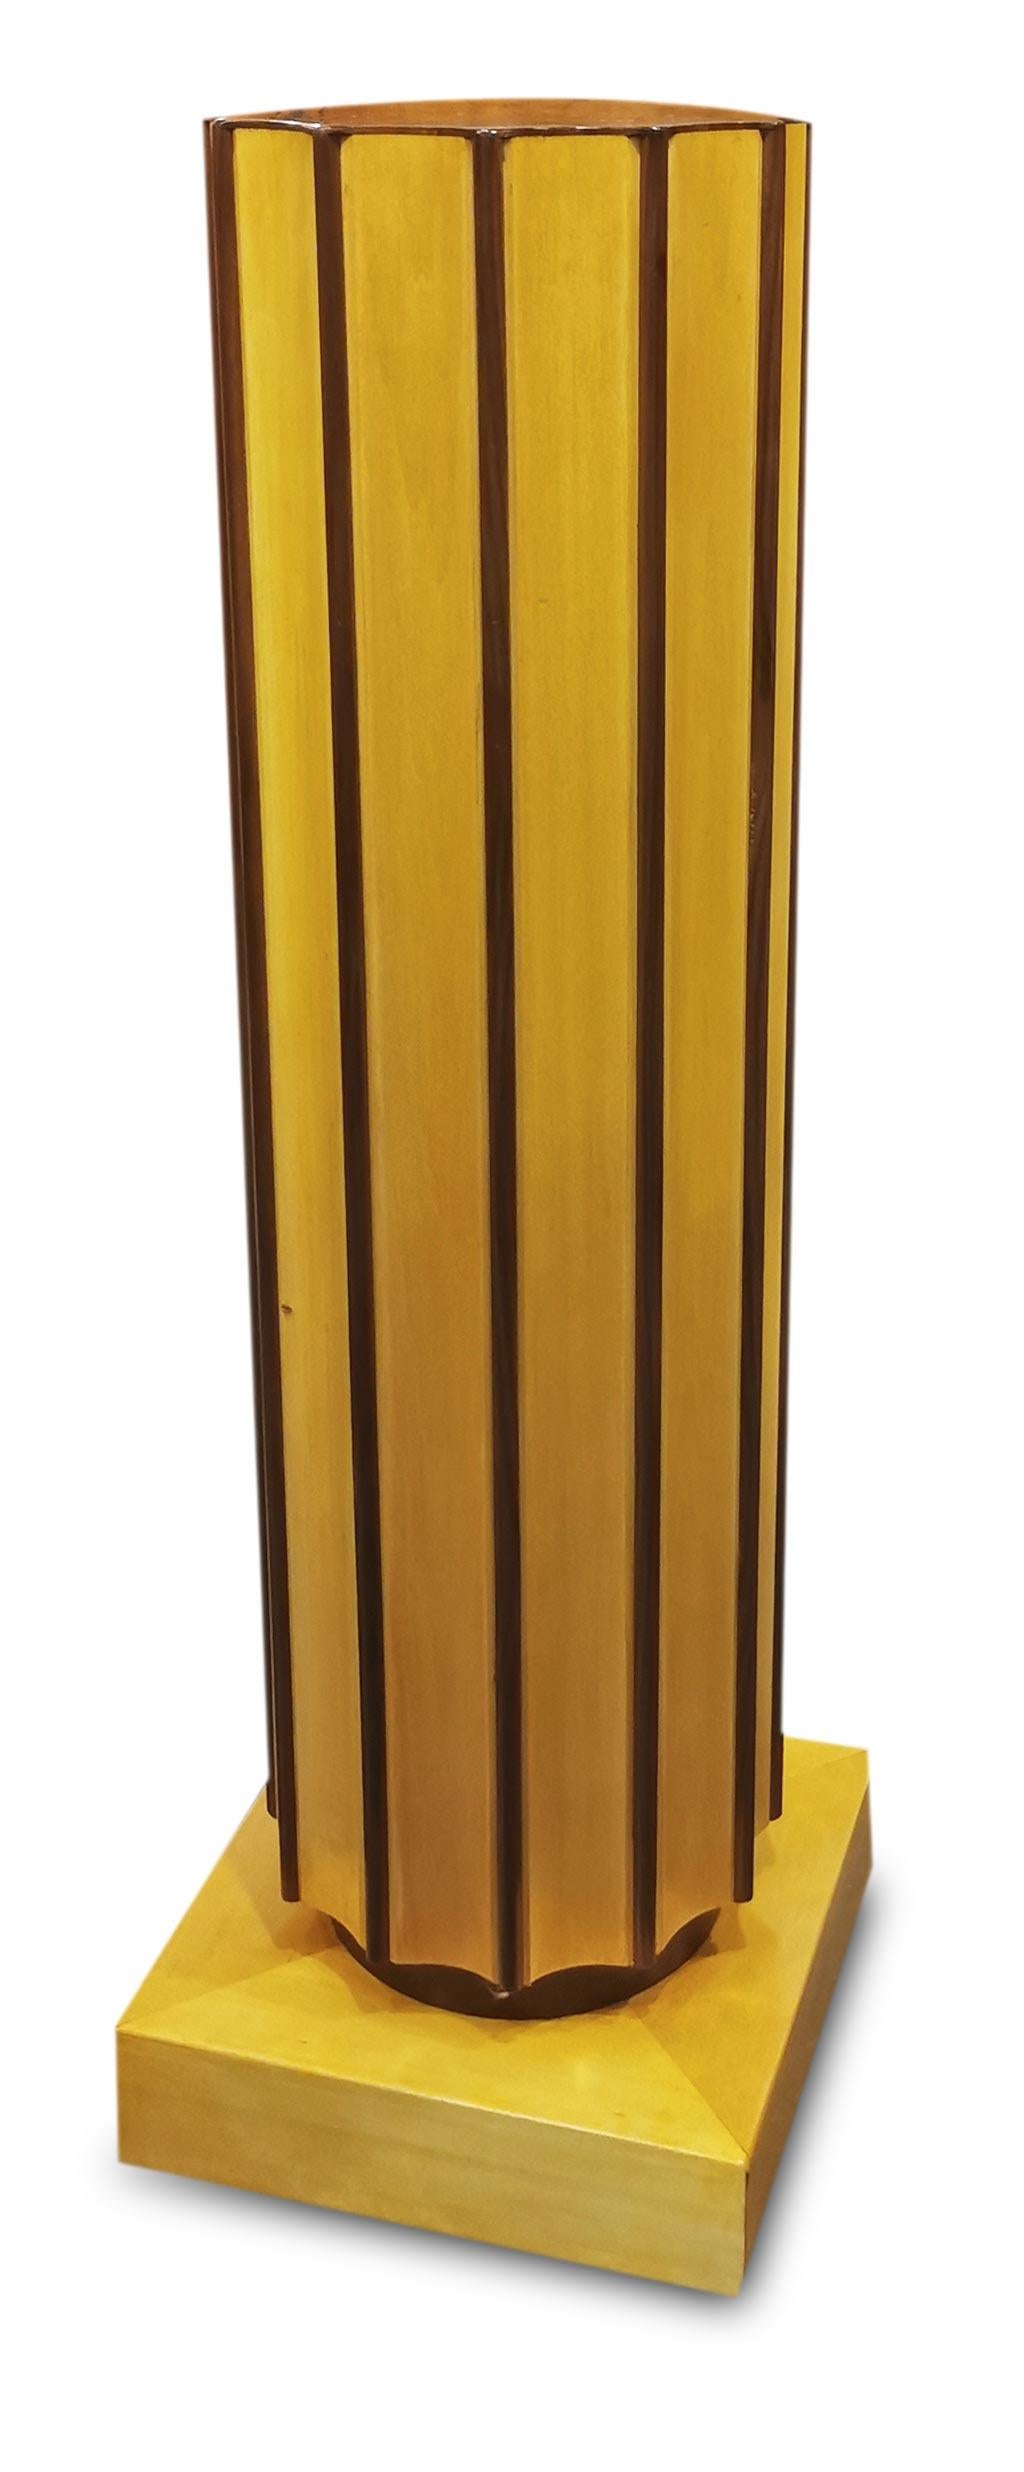 Elegante paire de colonnes cannelées.
Ils reposent sur un parallélépipède et sont plaqués en érable et en noyer.
les deux bois aux couleurs si différentes, l'érable clair et le noyer brun, créent un contraste de couleurs vraiment unique.
Idéal pour